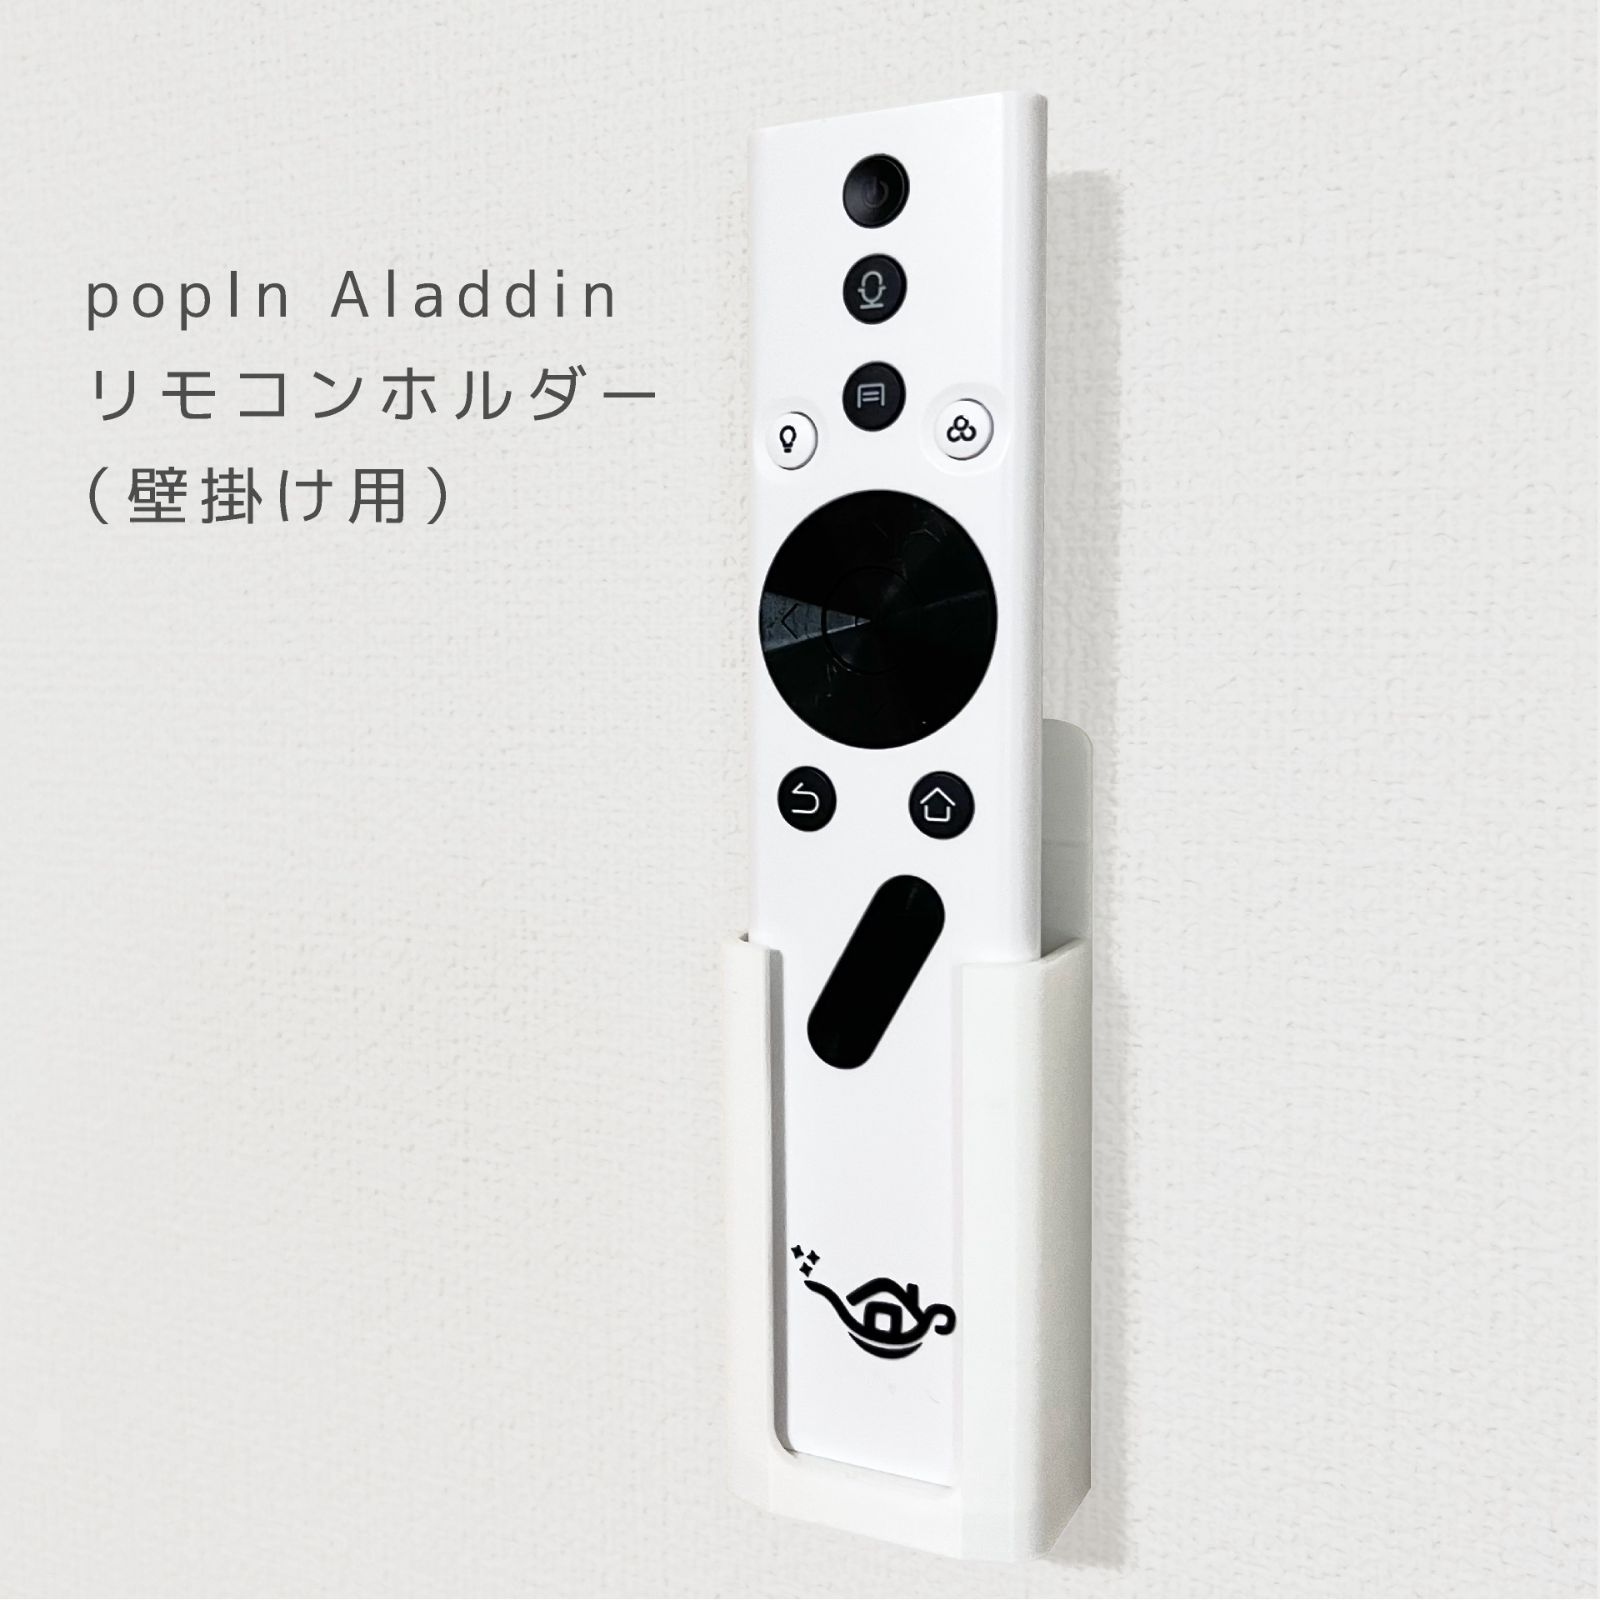 popin Aladdin リモコン - 映像機器